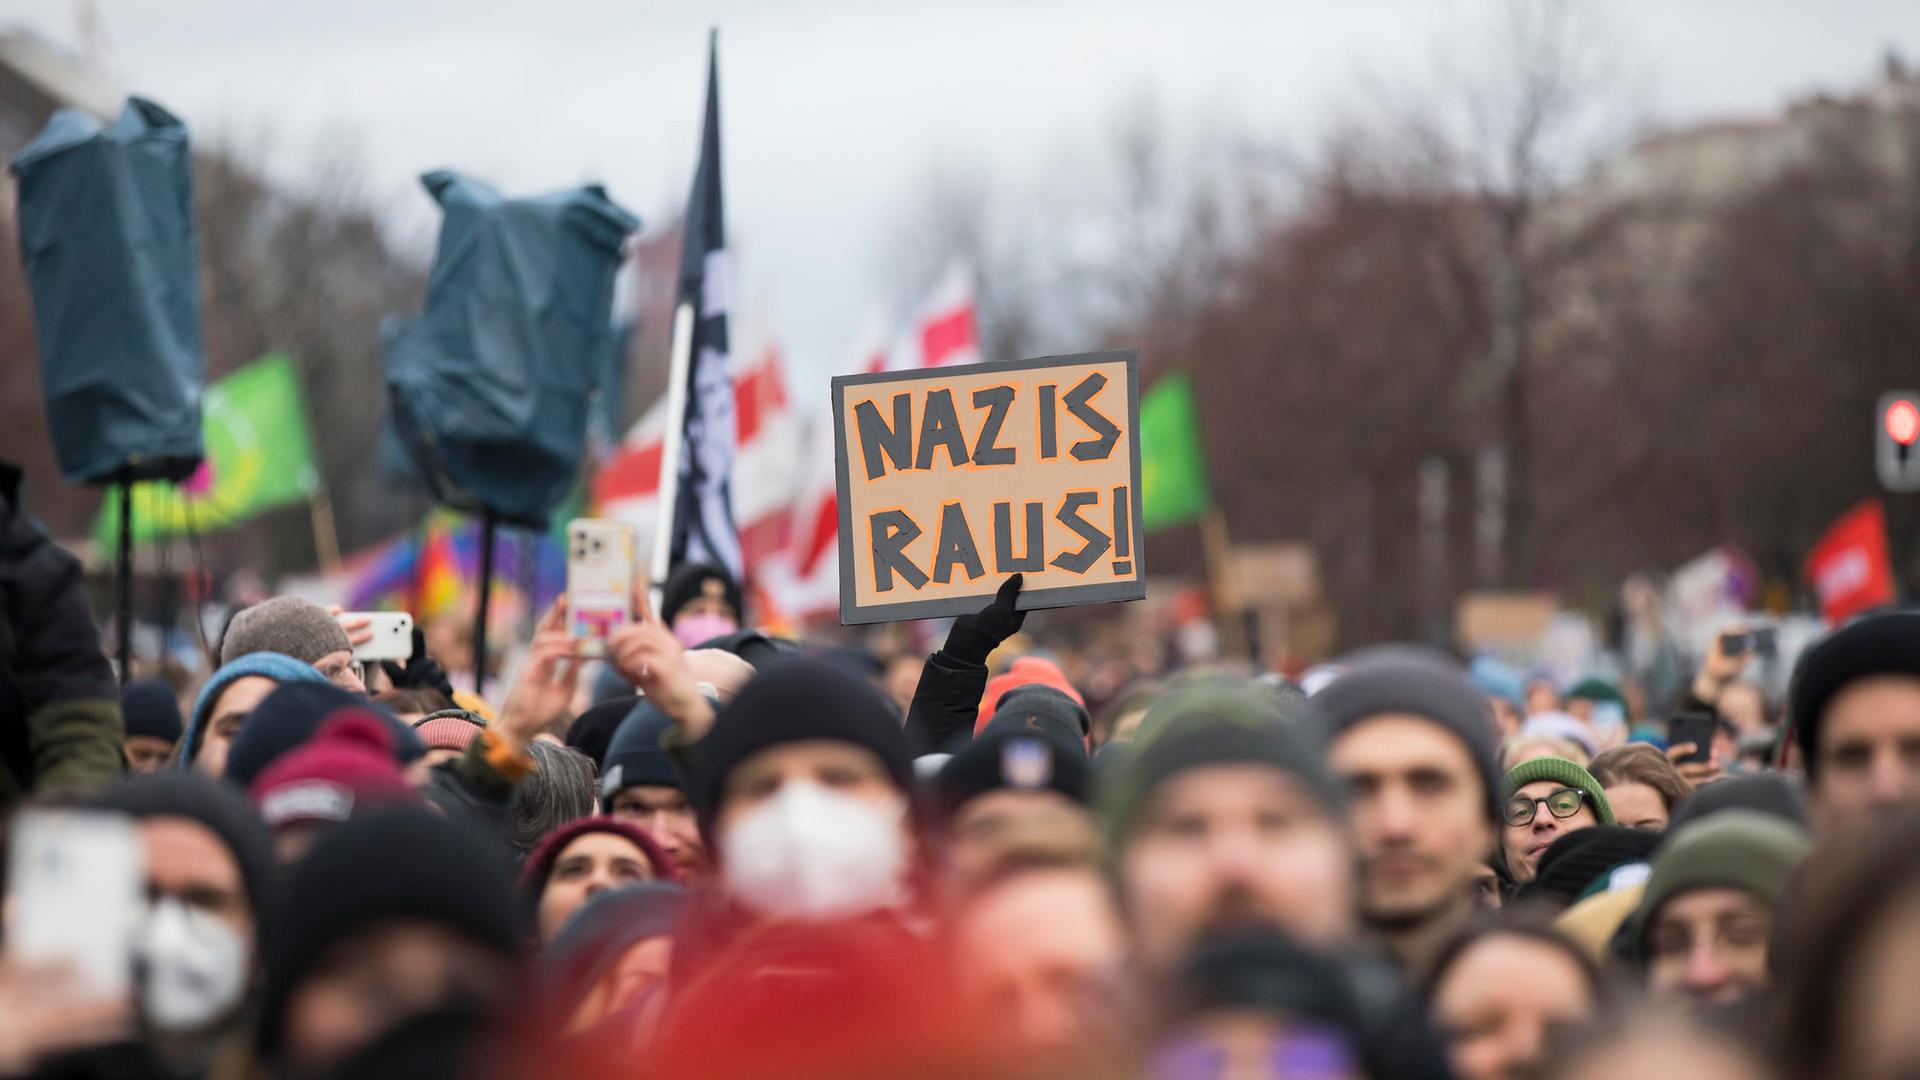 Teilnehmer mit Schild "Nazis raus!" bei der Demonstration "Demokratie verteidigen" auf dem Pariser Platz, Berlin, 14.01.2024